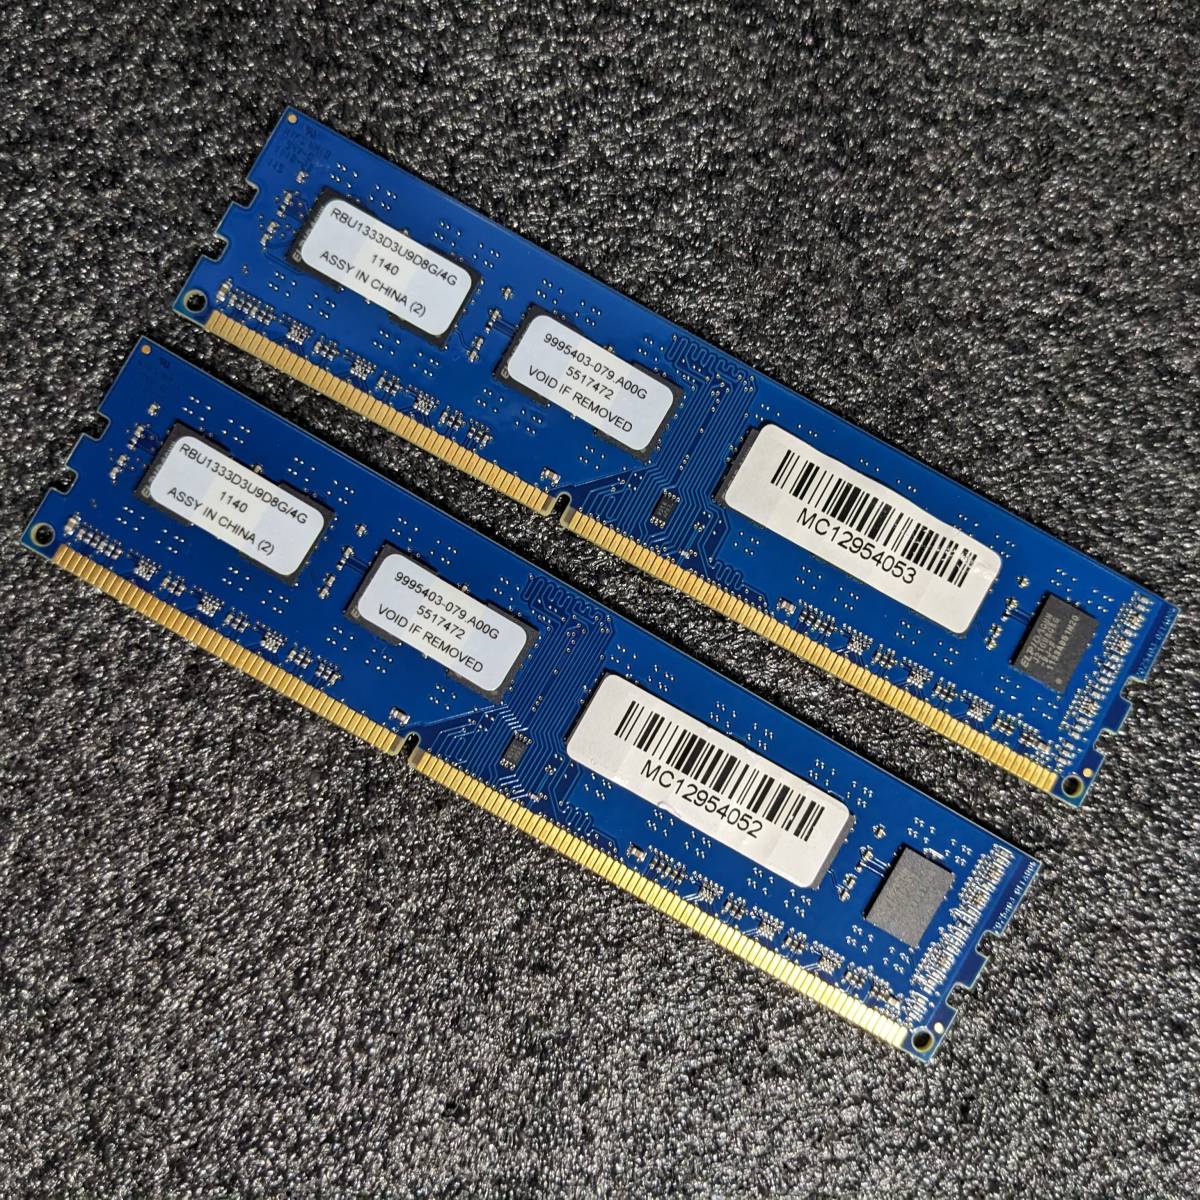 【中古】DDR3メモリ 8GB(4GB2枚組) Kingston RBU1333D3U9D8G/4G [DDR3-1333 PC3-10600]_画像1